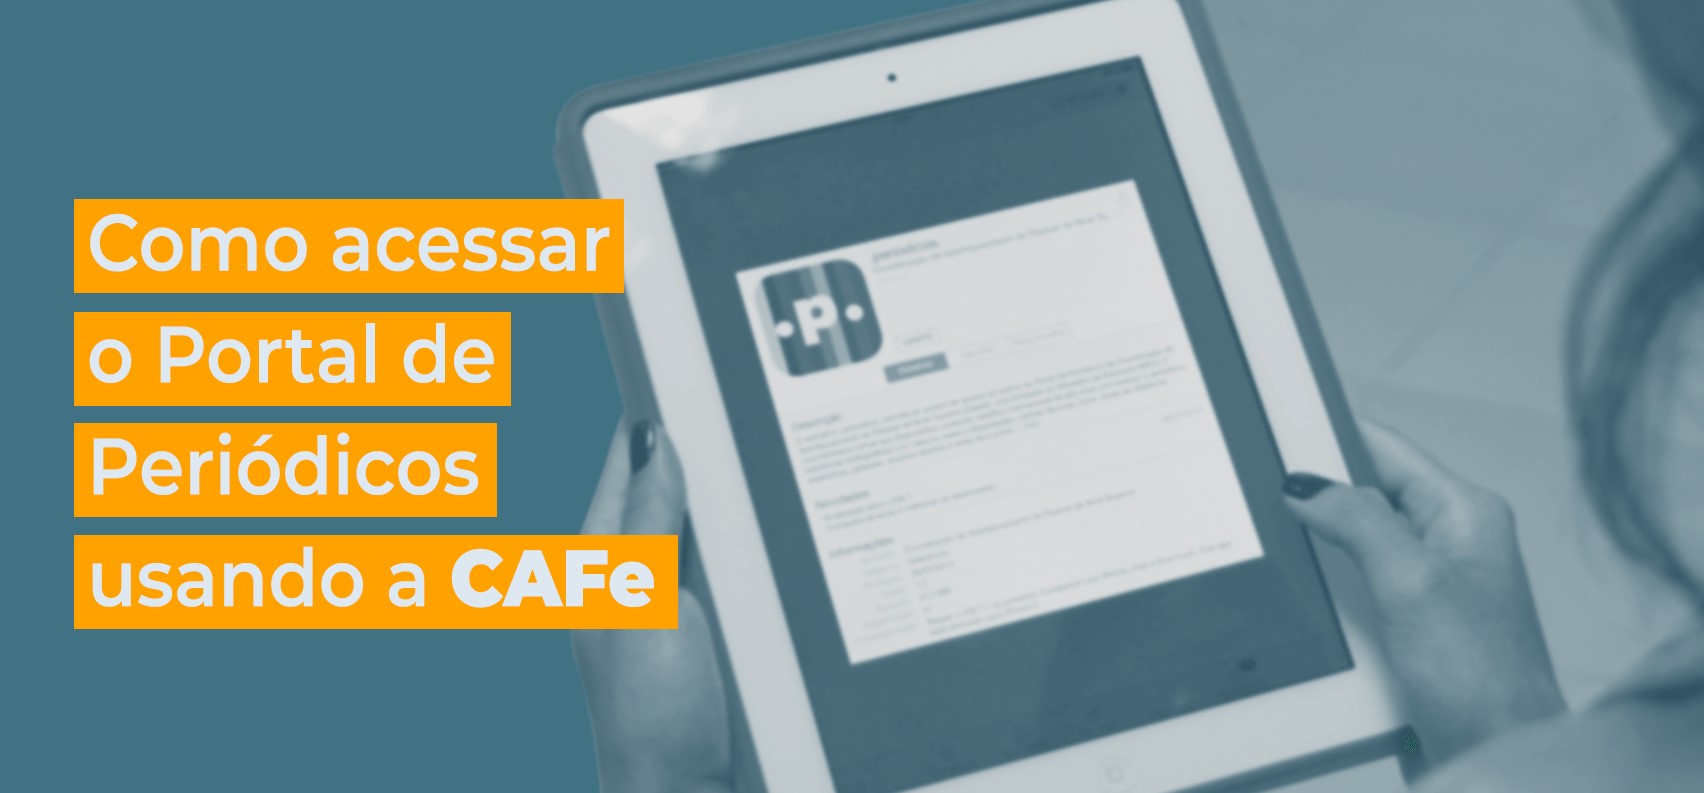 Como acessar o Portal de Periódicos da CAPES usando a CAFe? 